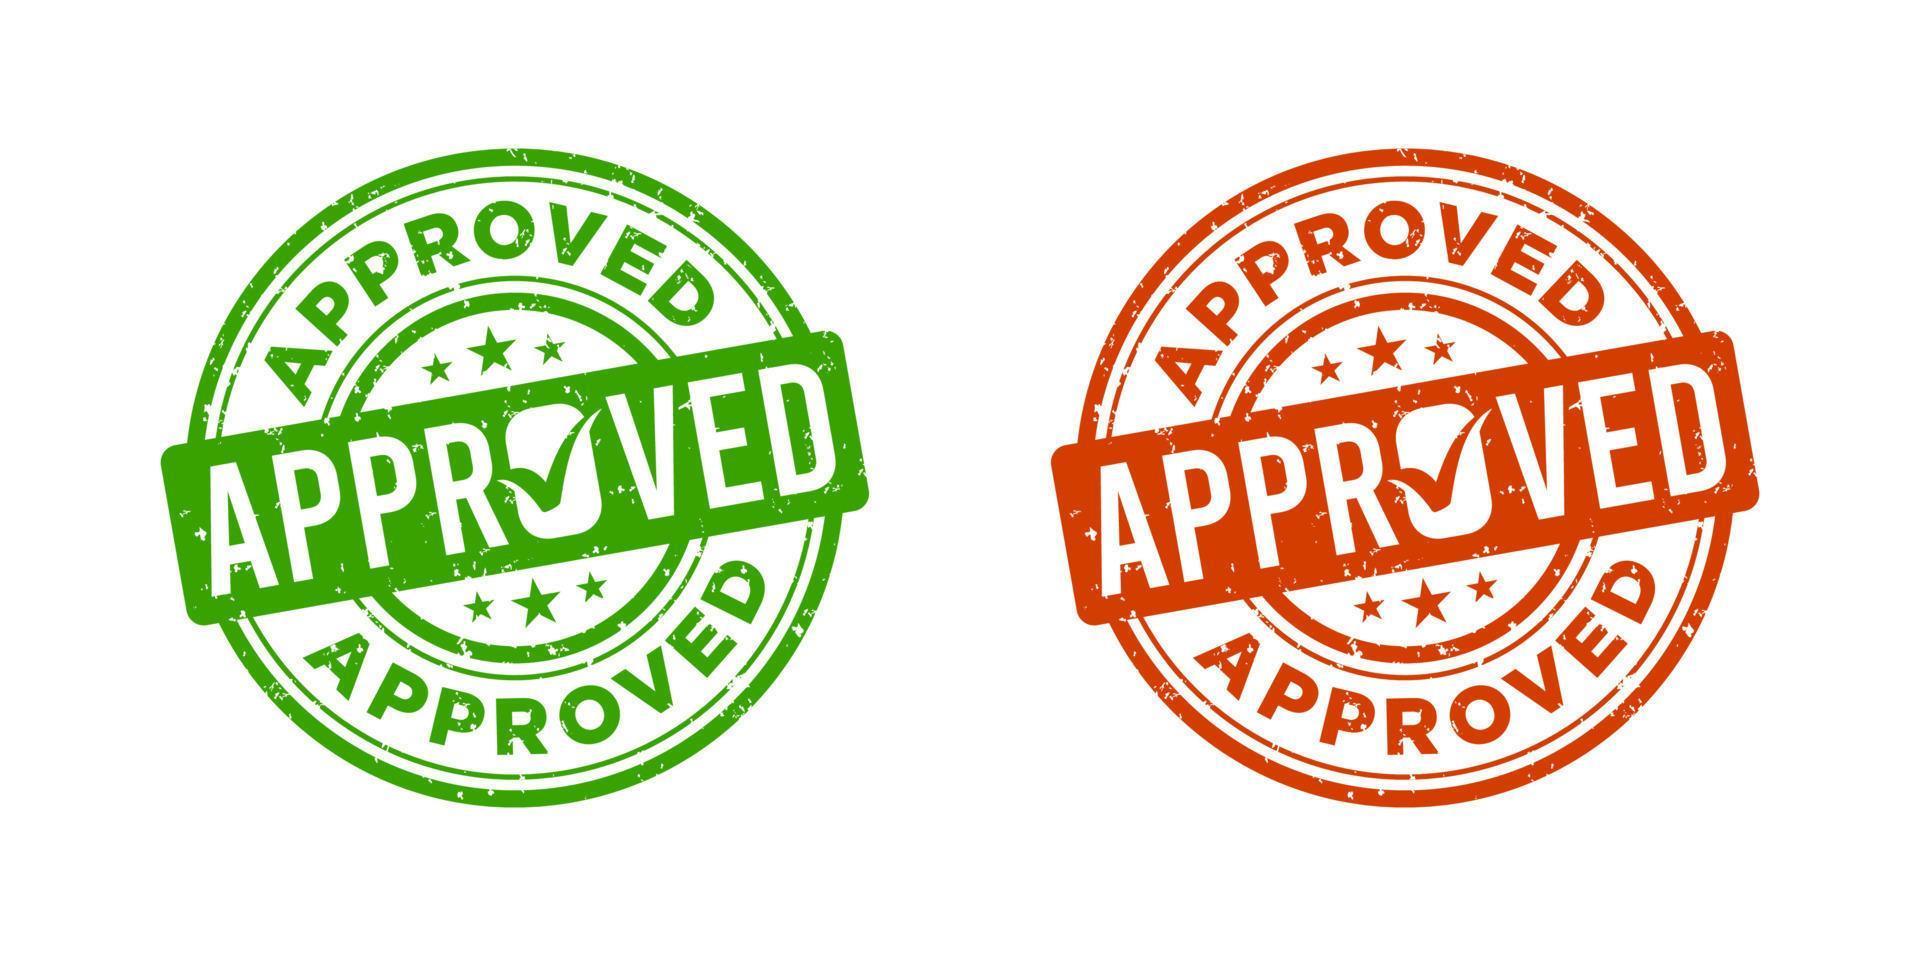 Approved stamp, design element suitable for websites, print design or app vector